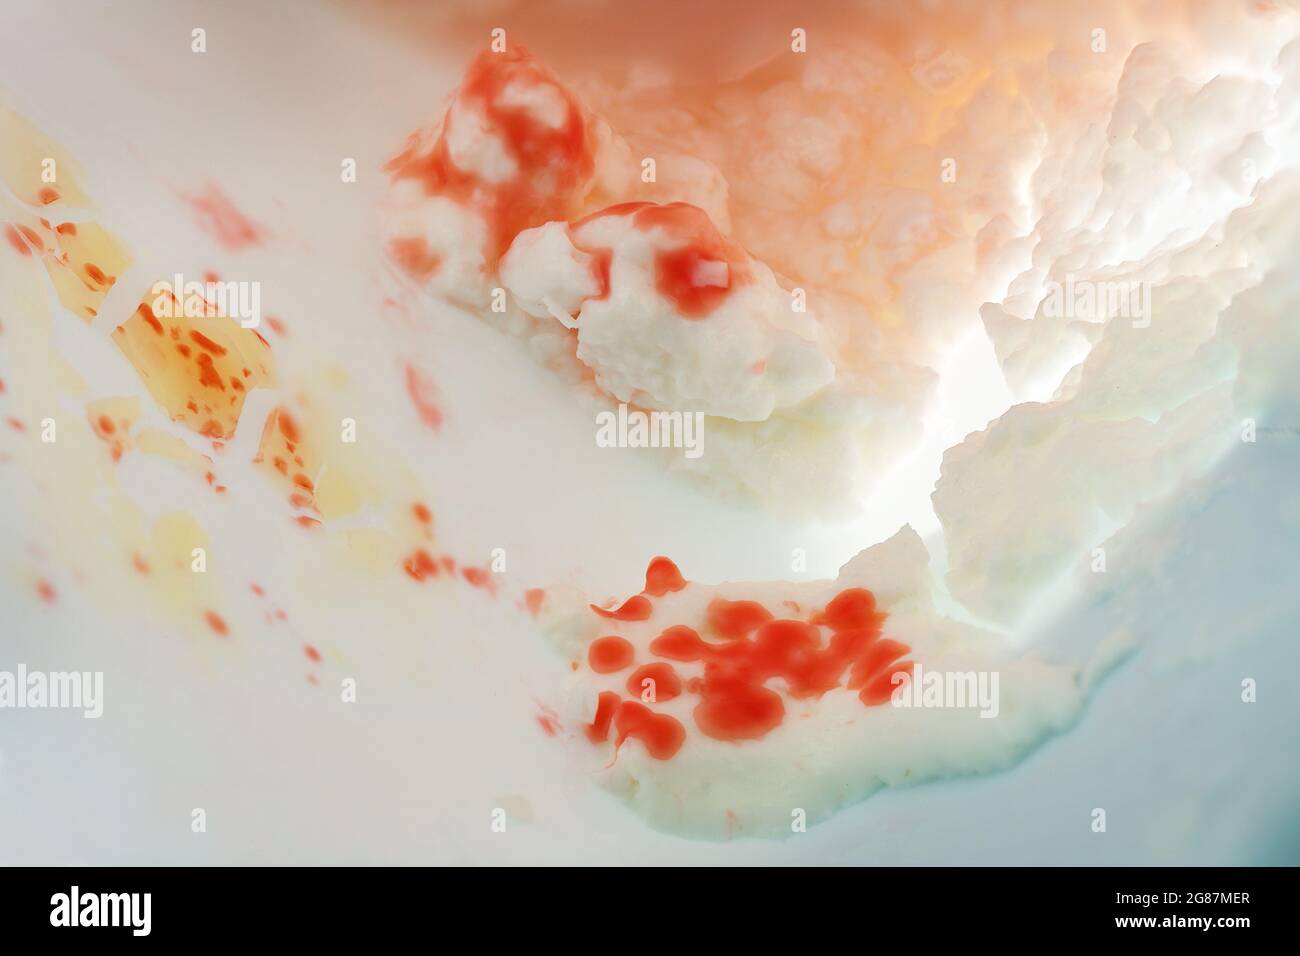 Serratia marcescens, stäbchenförmige Bakterien mit rotem Pigment, die in einer Packung Quark wachsen, wahrscheinlich aufgrund einer Kontamination während der Füllung, Konzept f Stockfoto